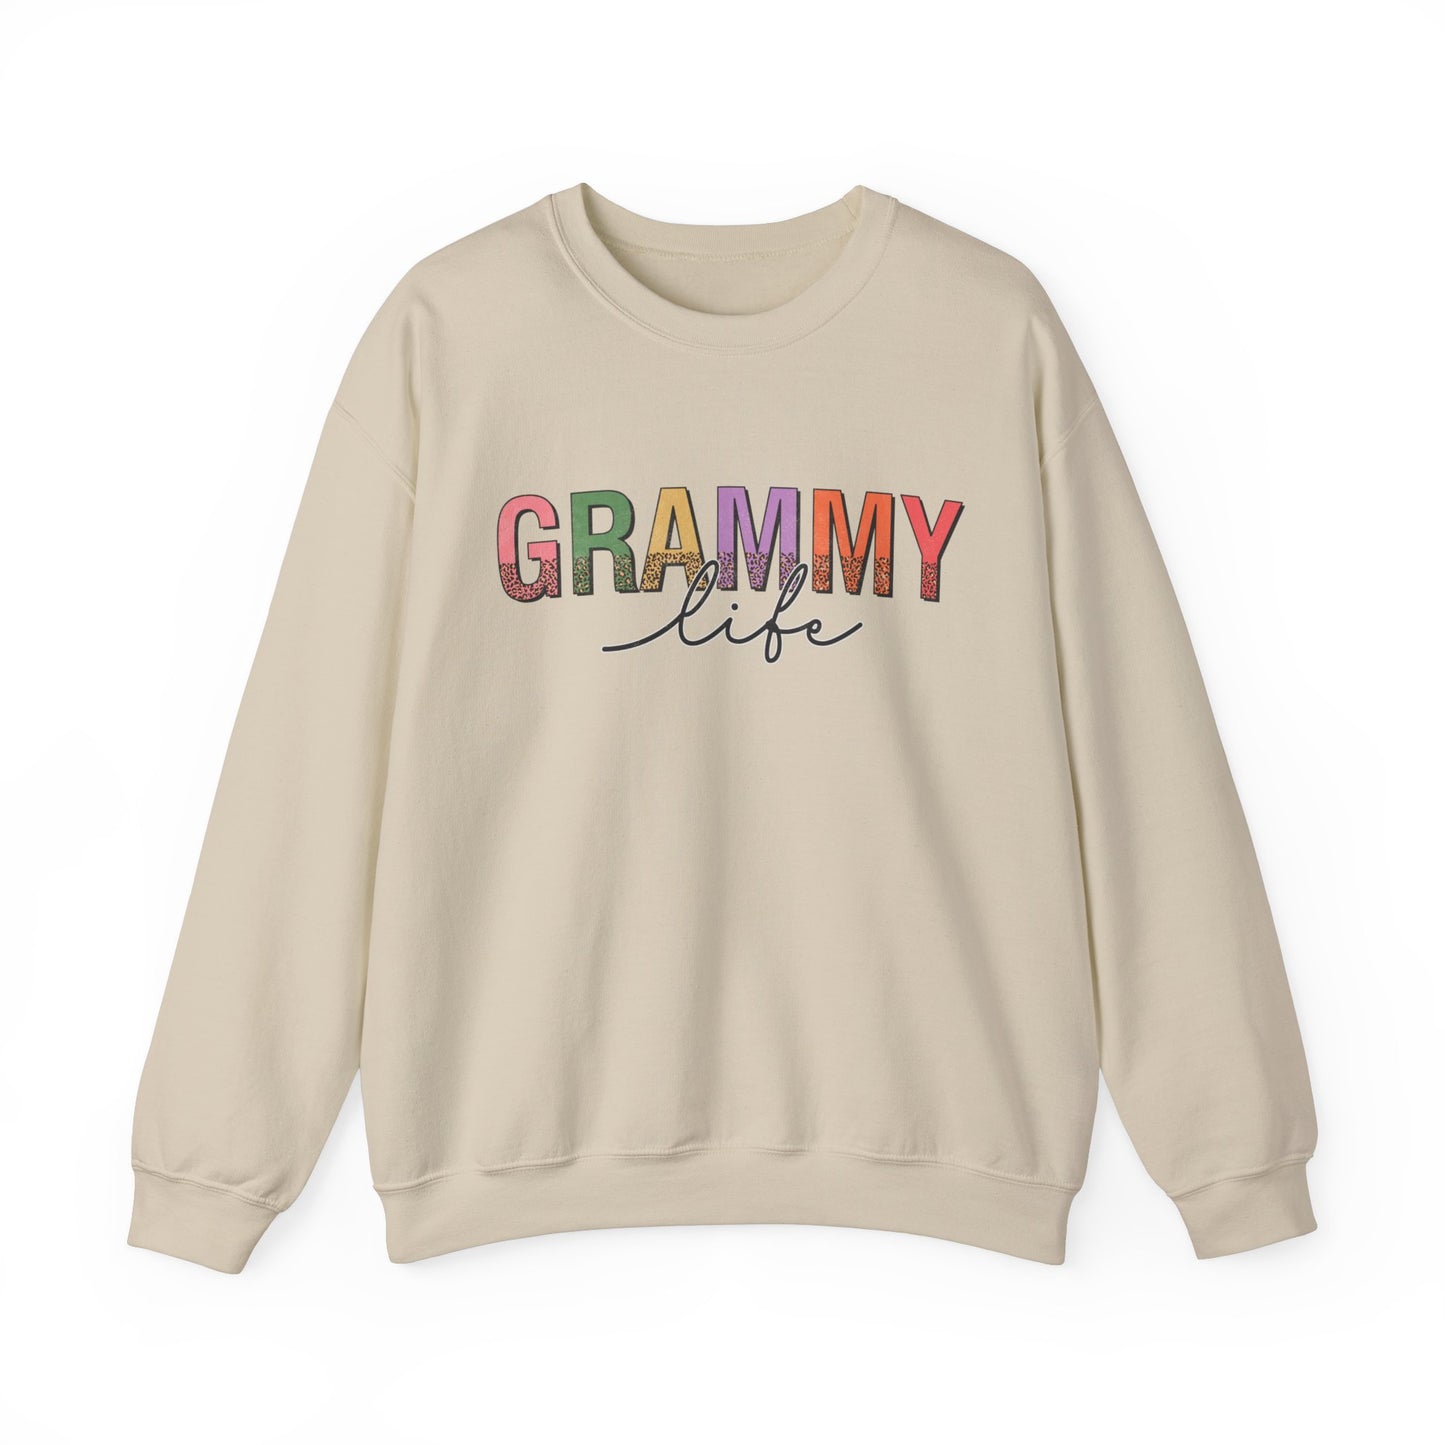 Grammy Life Grandma Women's Sweatshirt